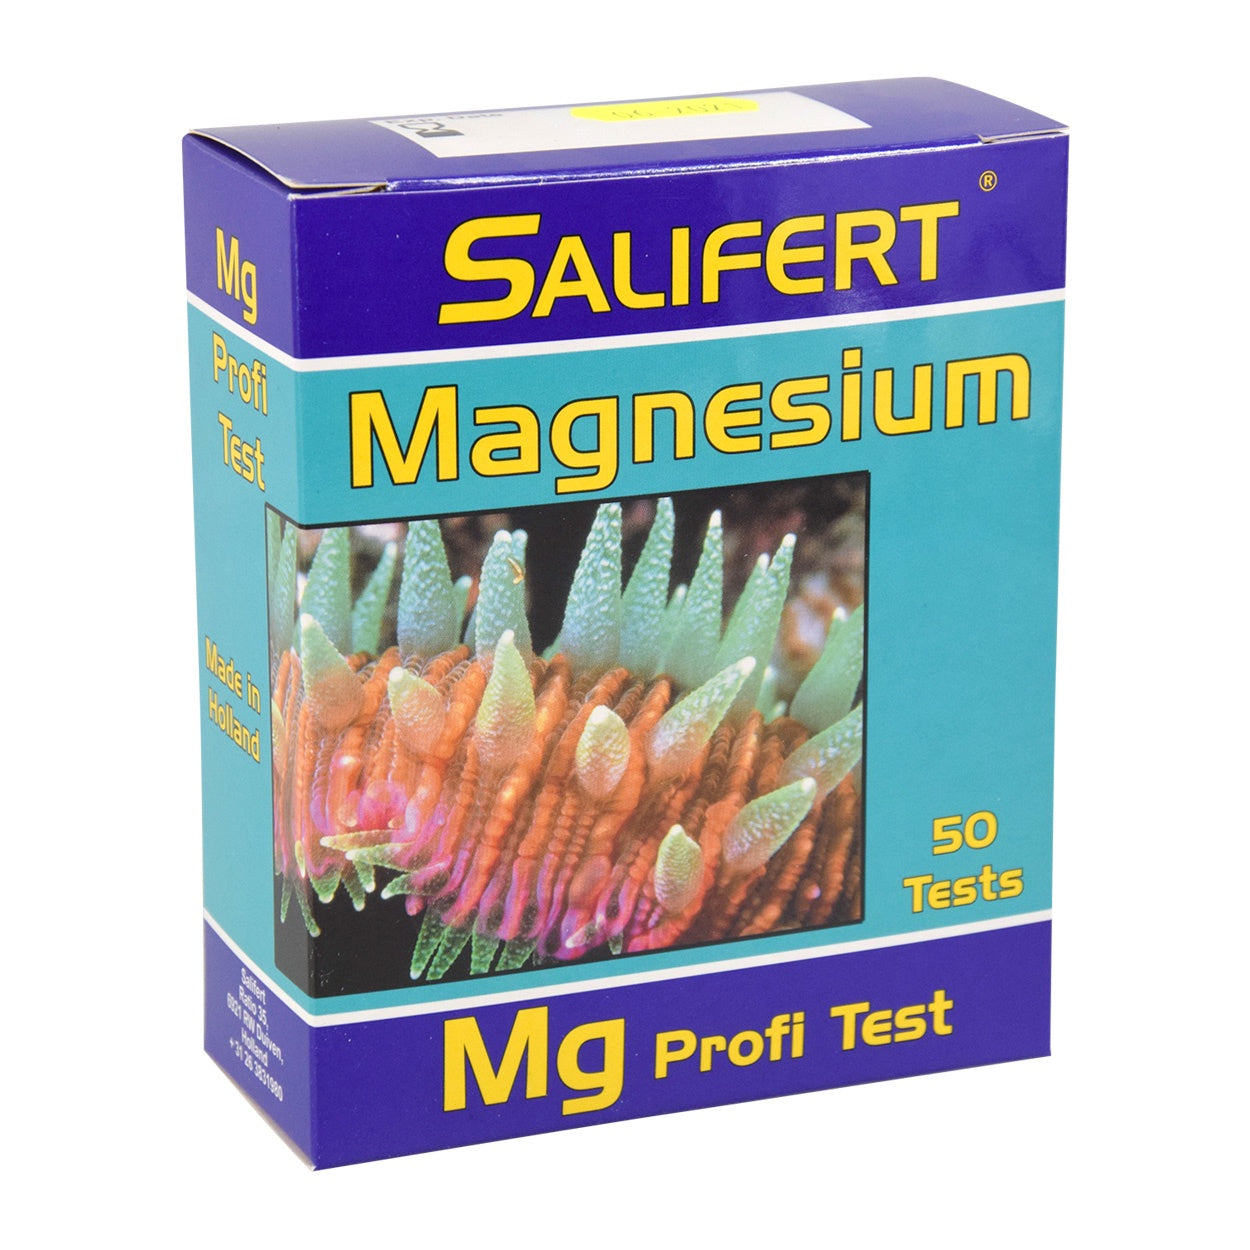 Mg (Magnesium) Profi-Test